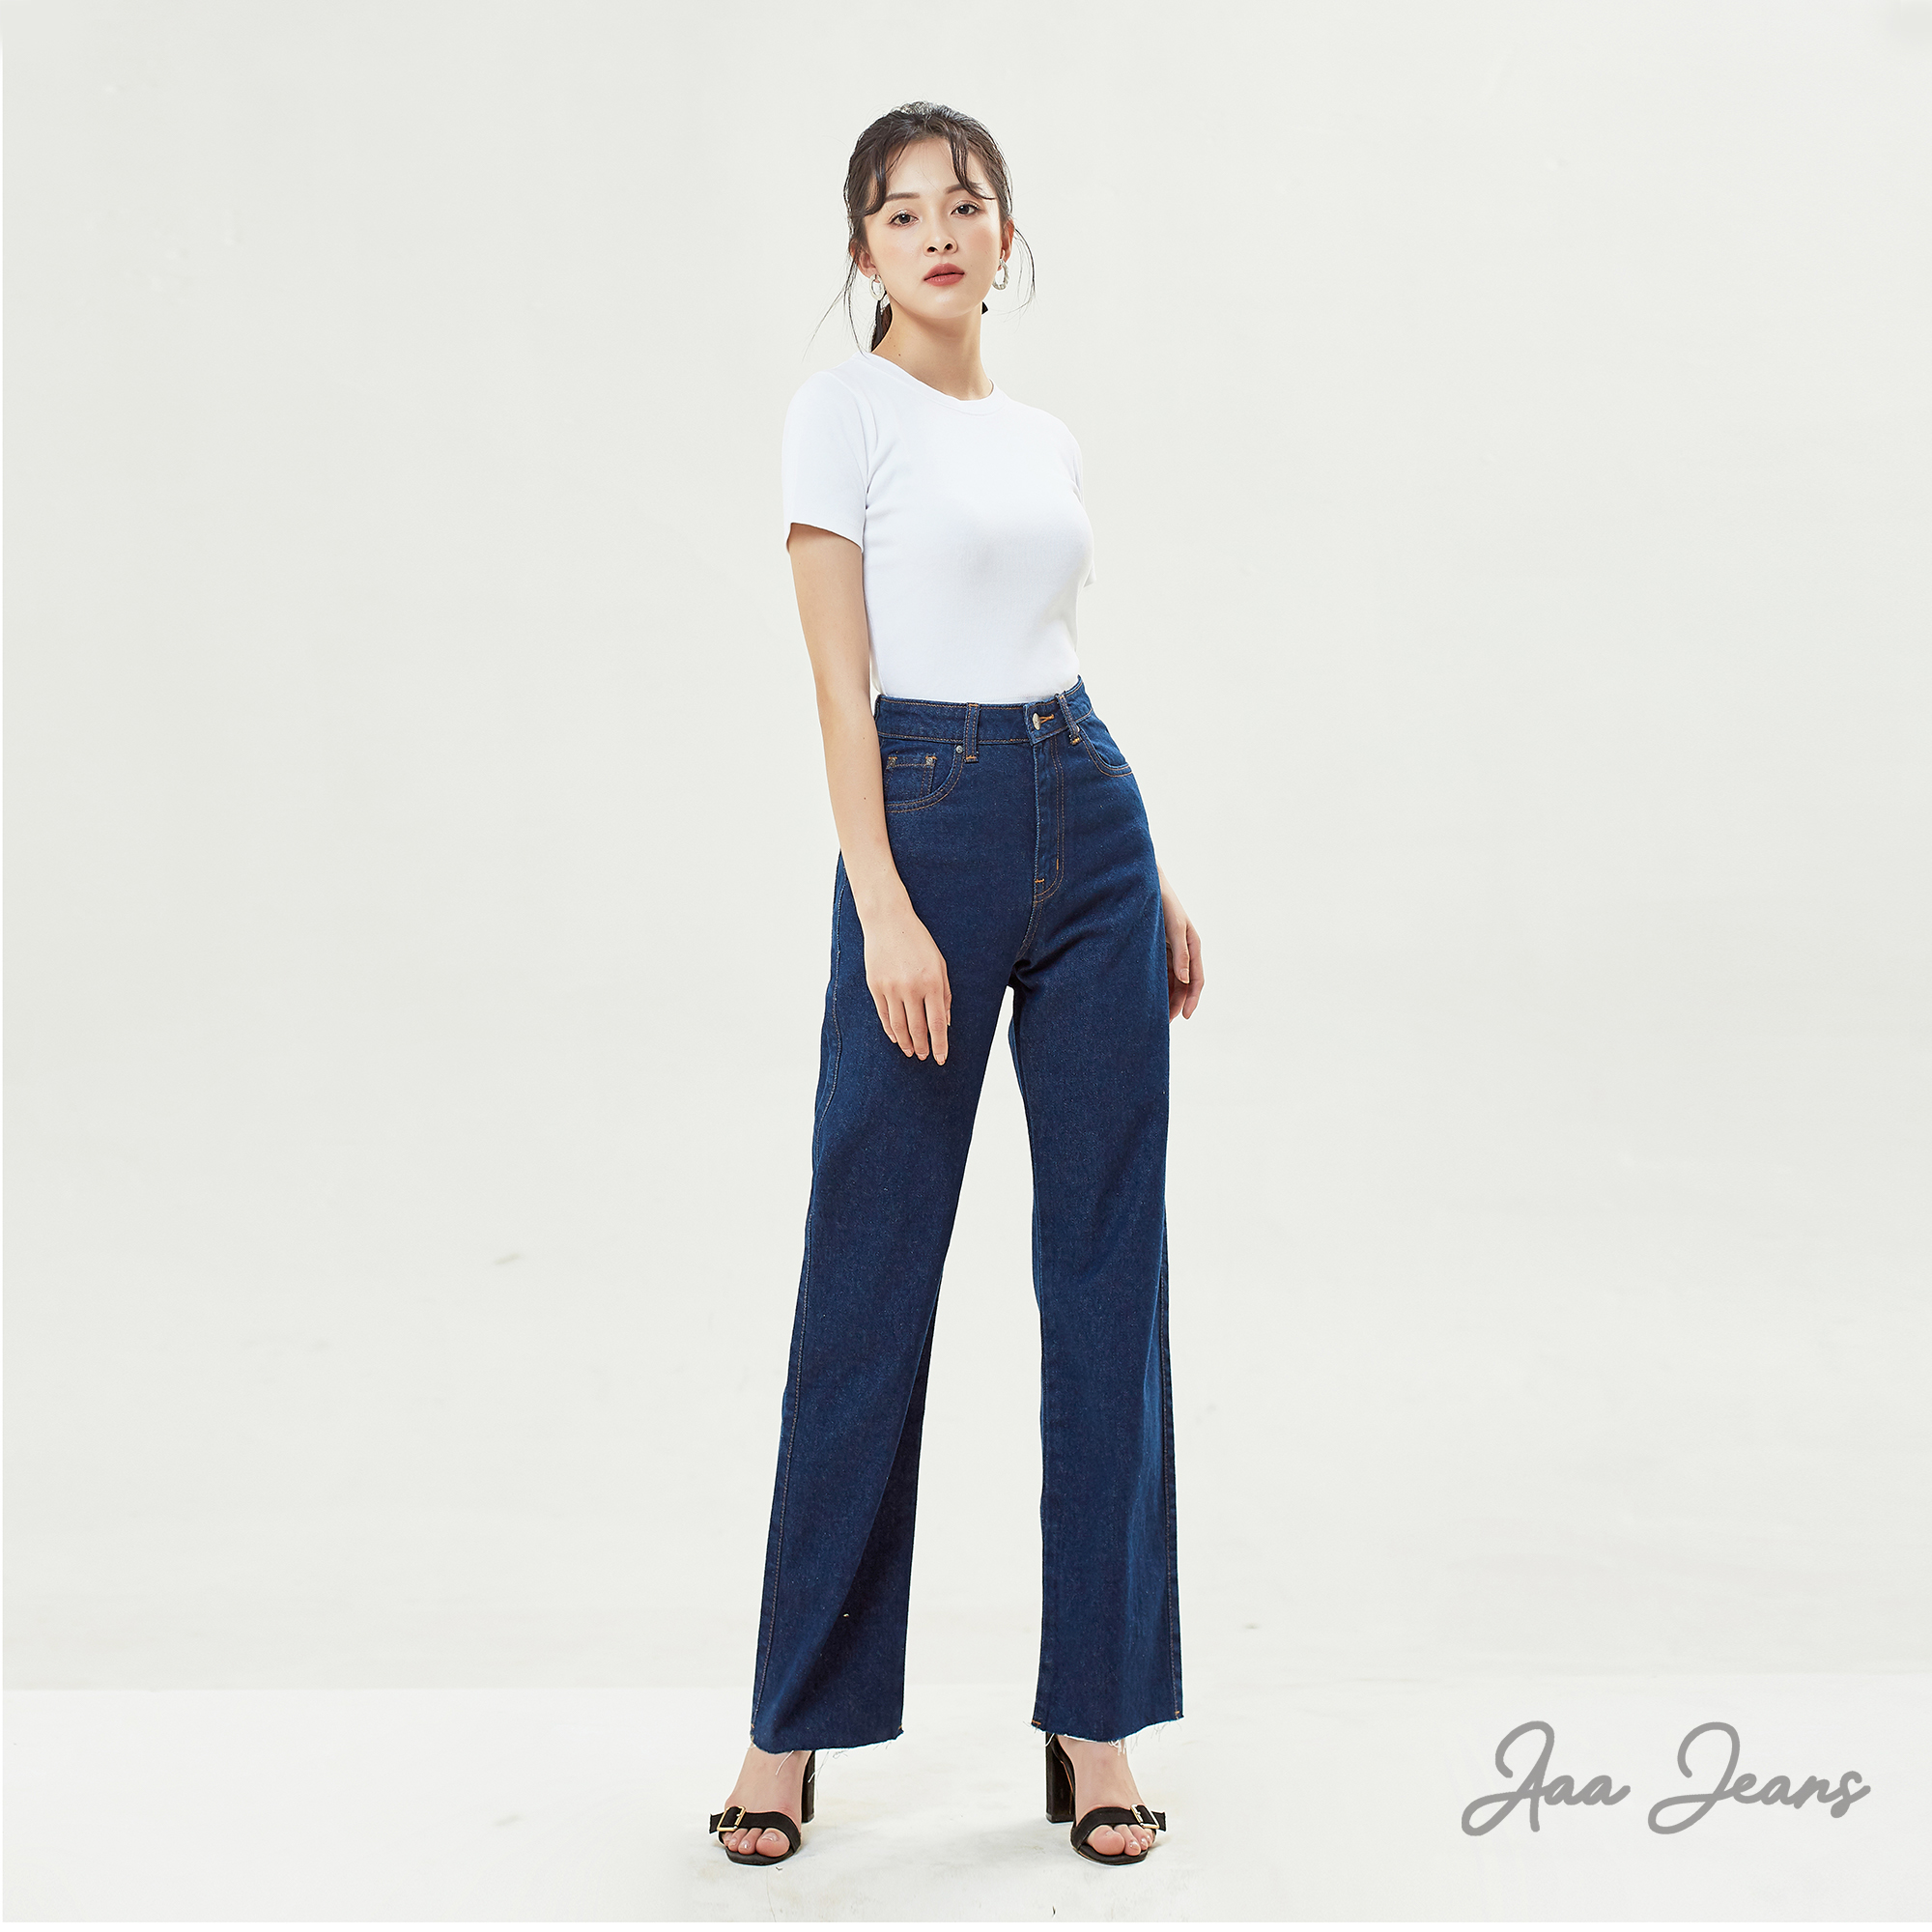 Quần Jean Ống Rộng Xanh Indigo Thời Trang - Aaa Jeans